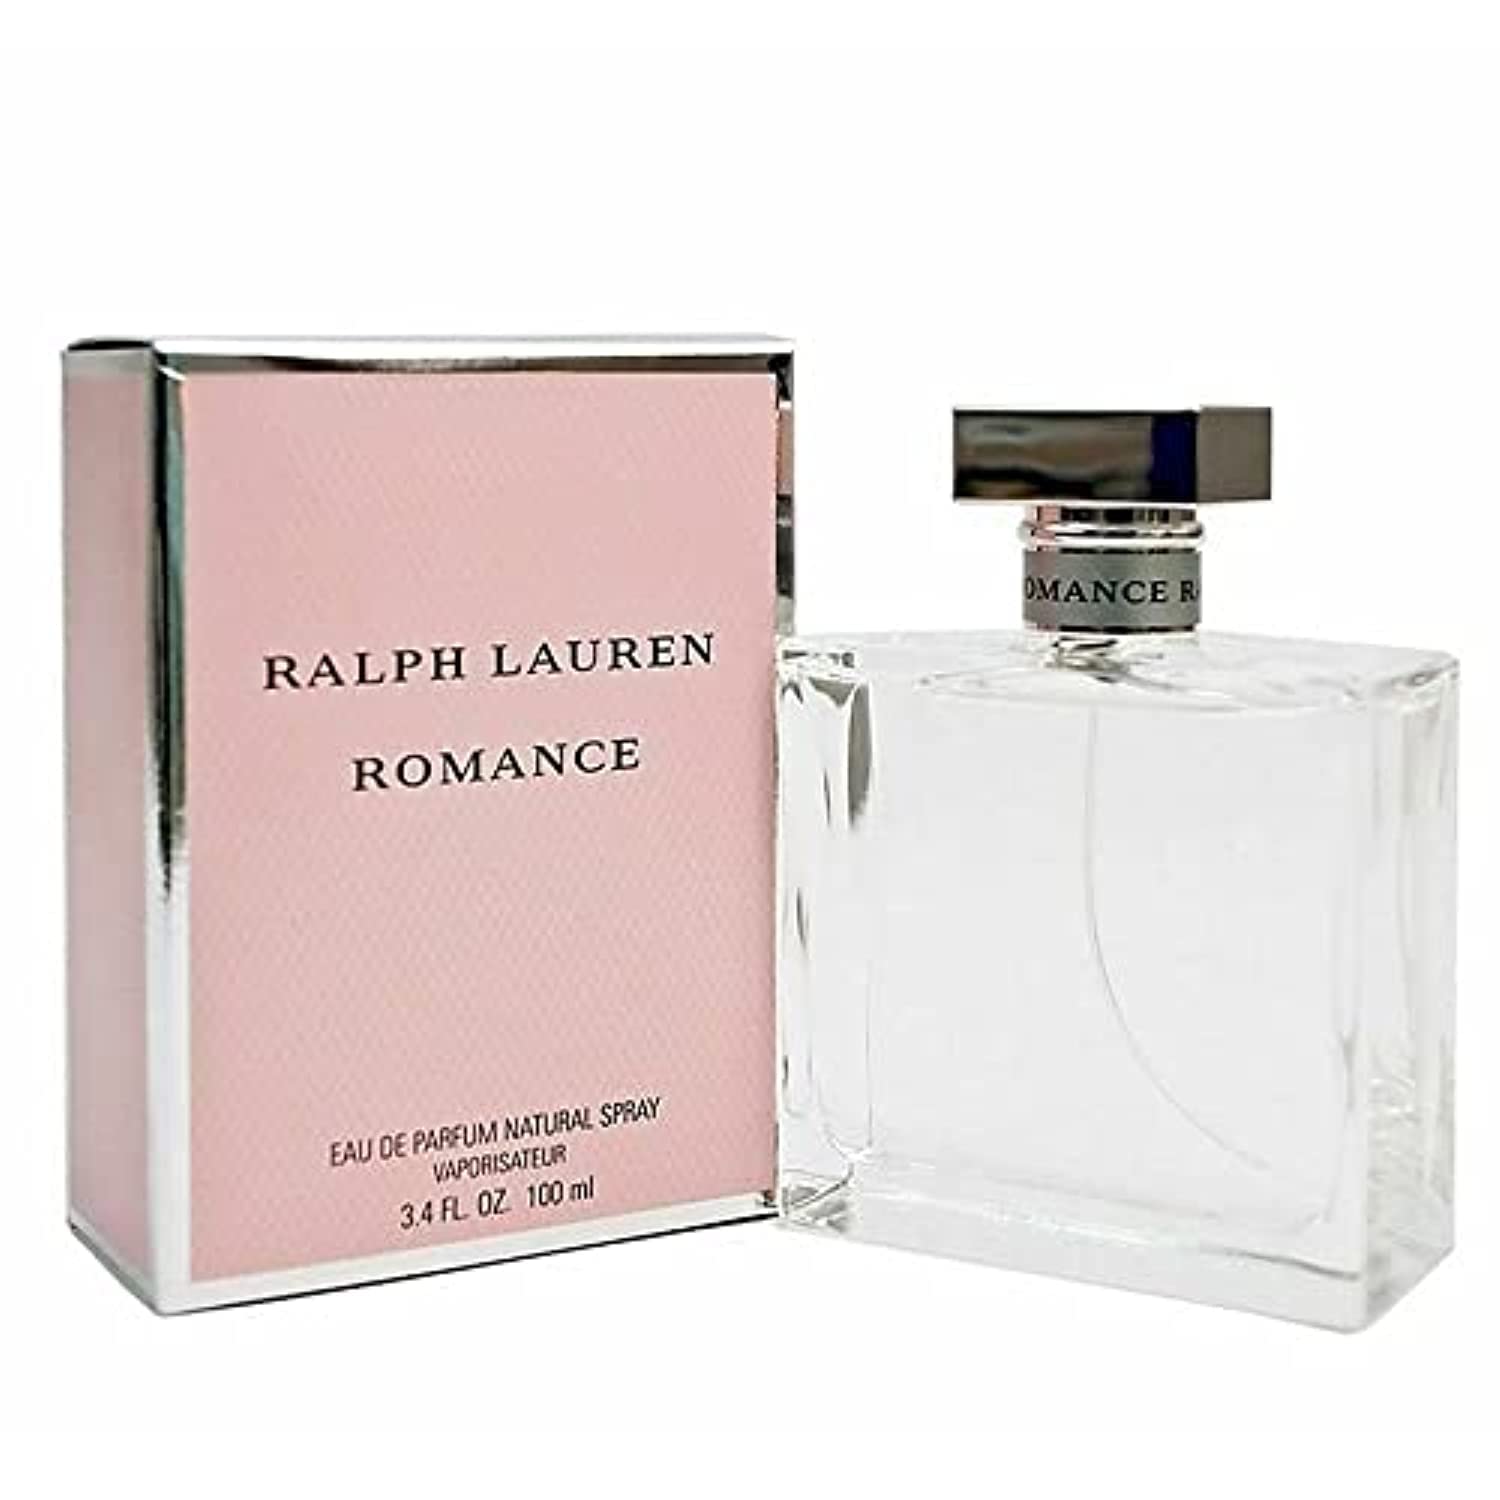 Actualizar 108+ imagen ralph lauren romance perfume 3.4 oz